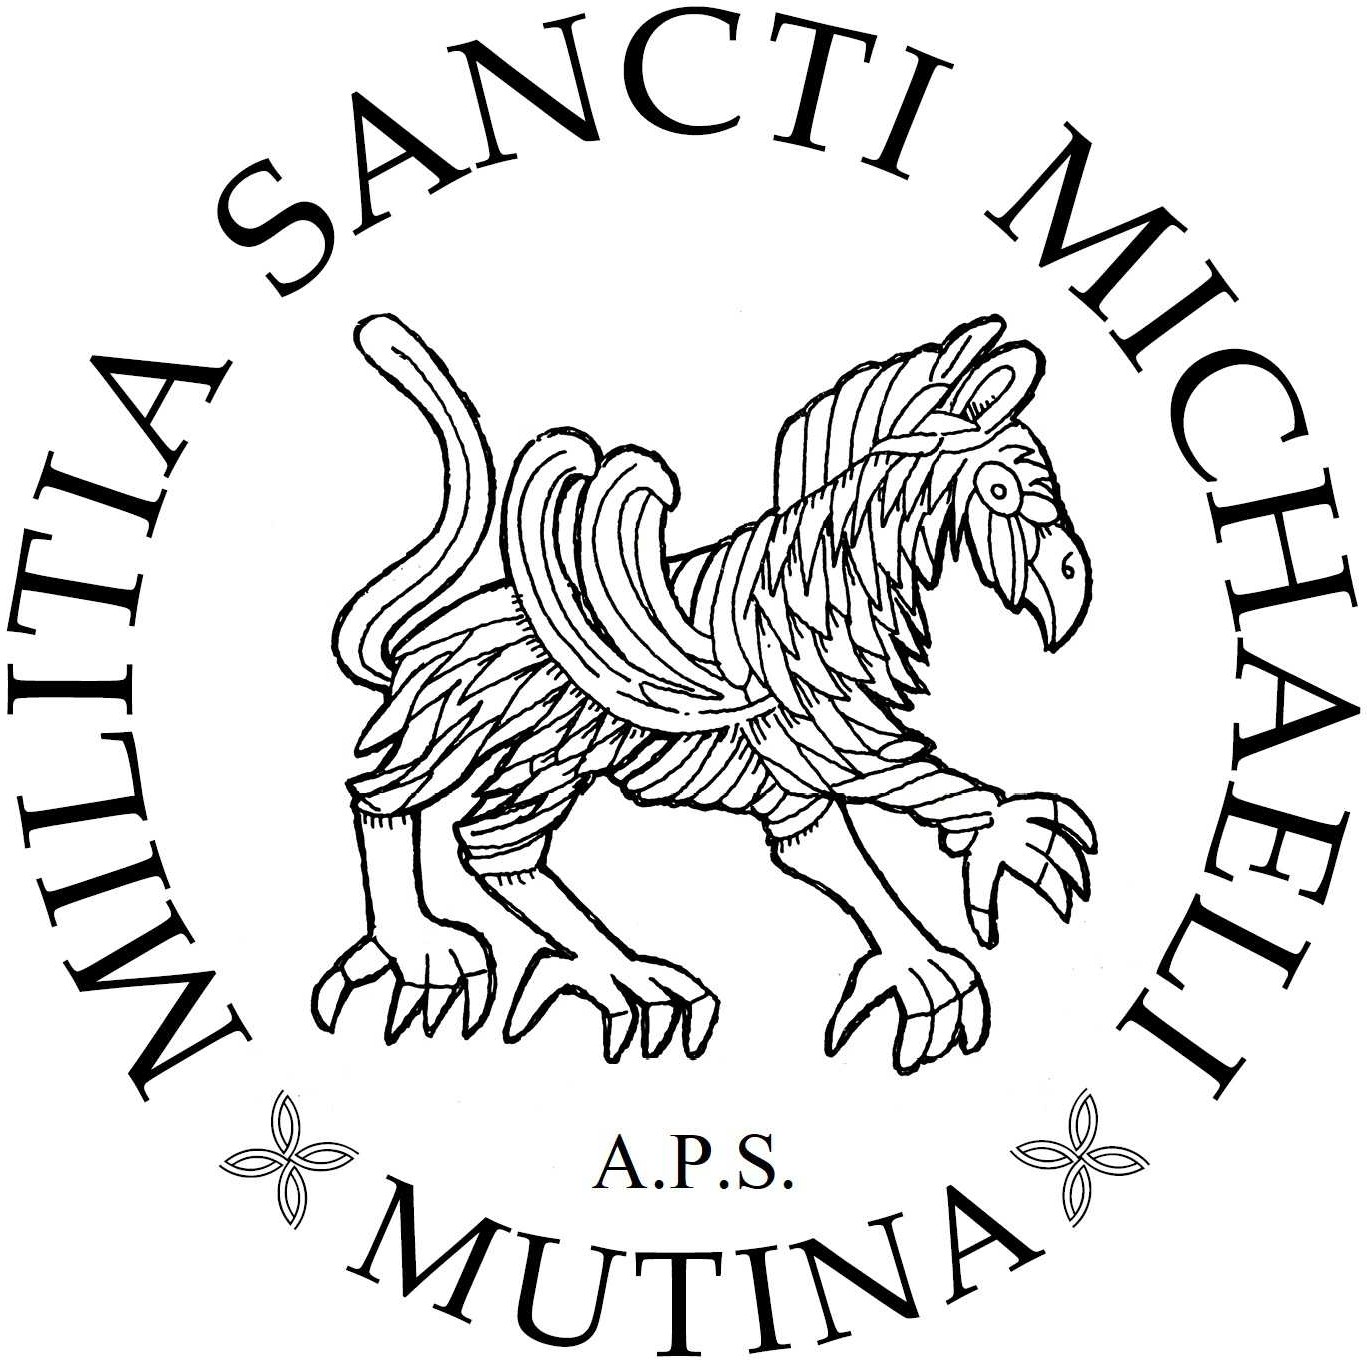 Militia Sancti Michaeli aps